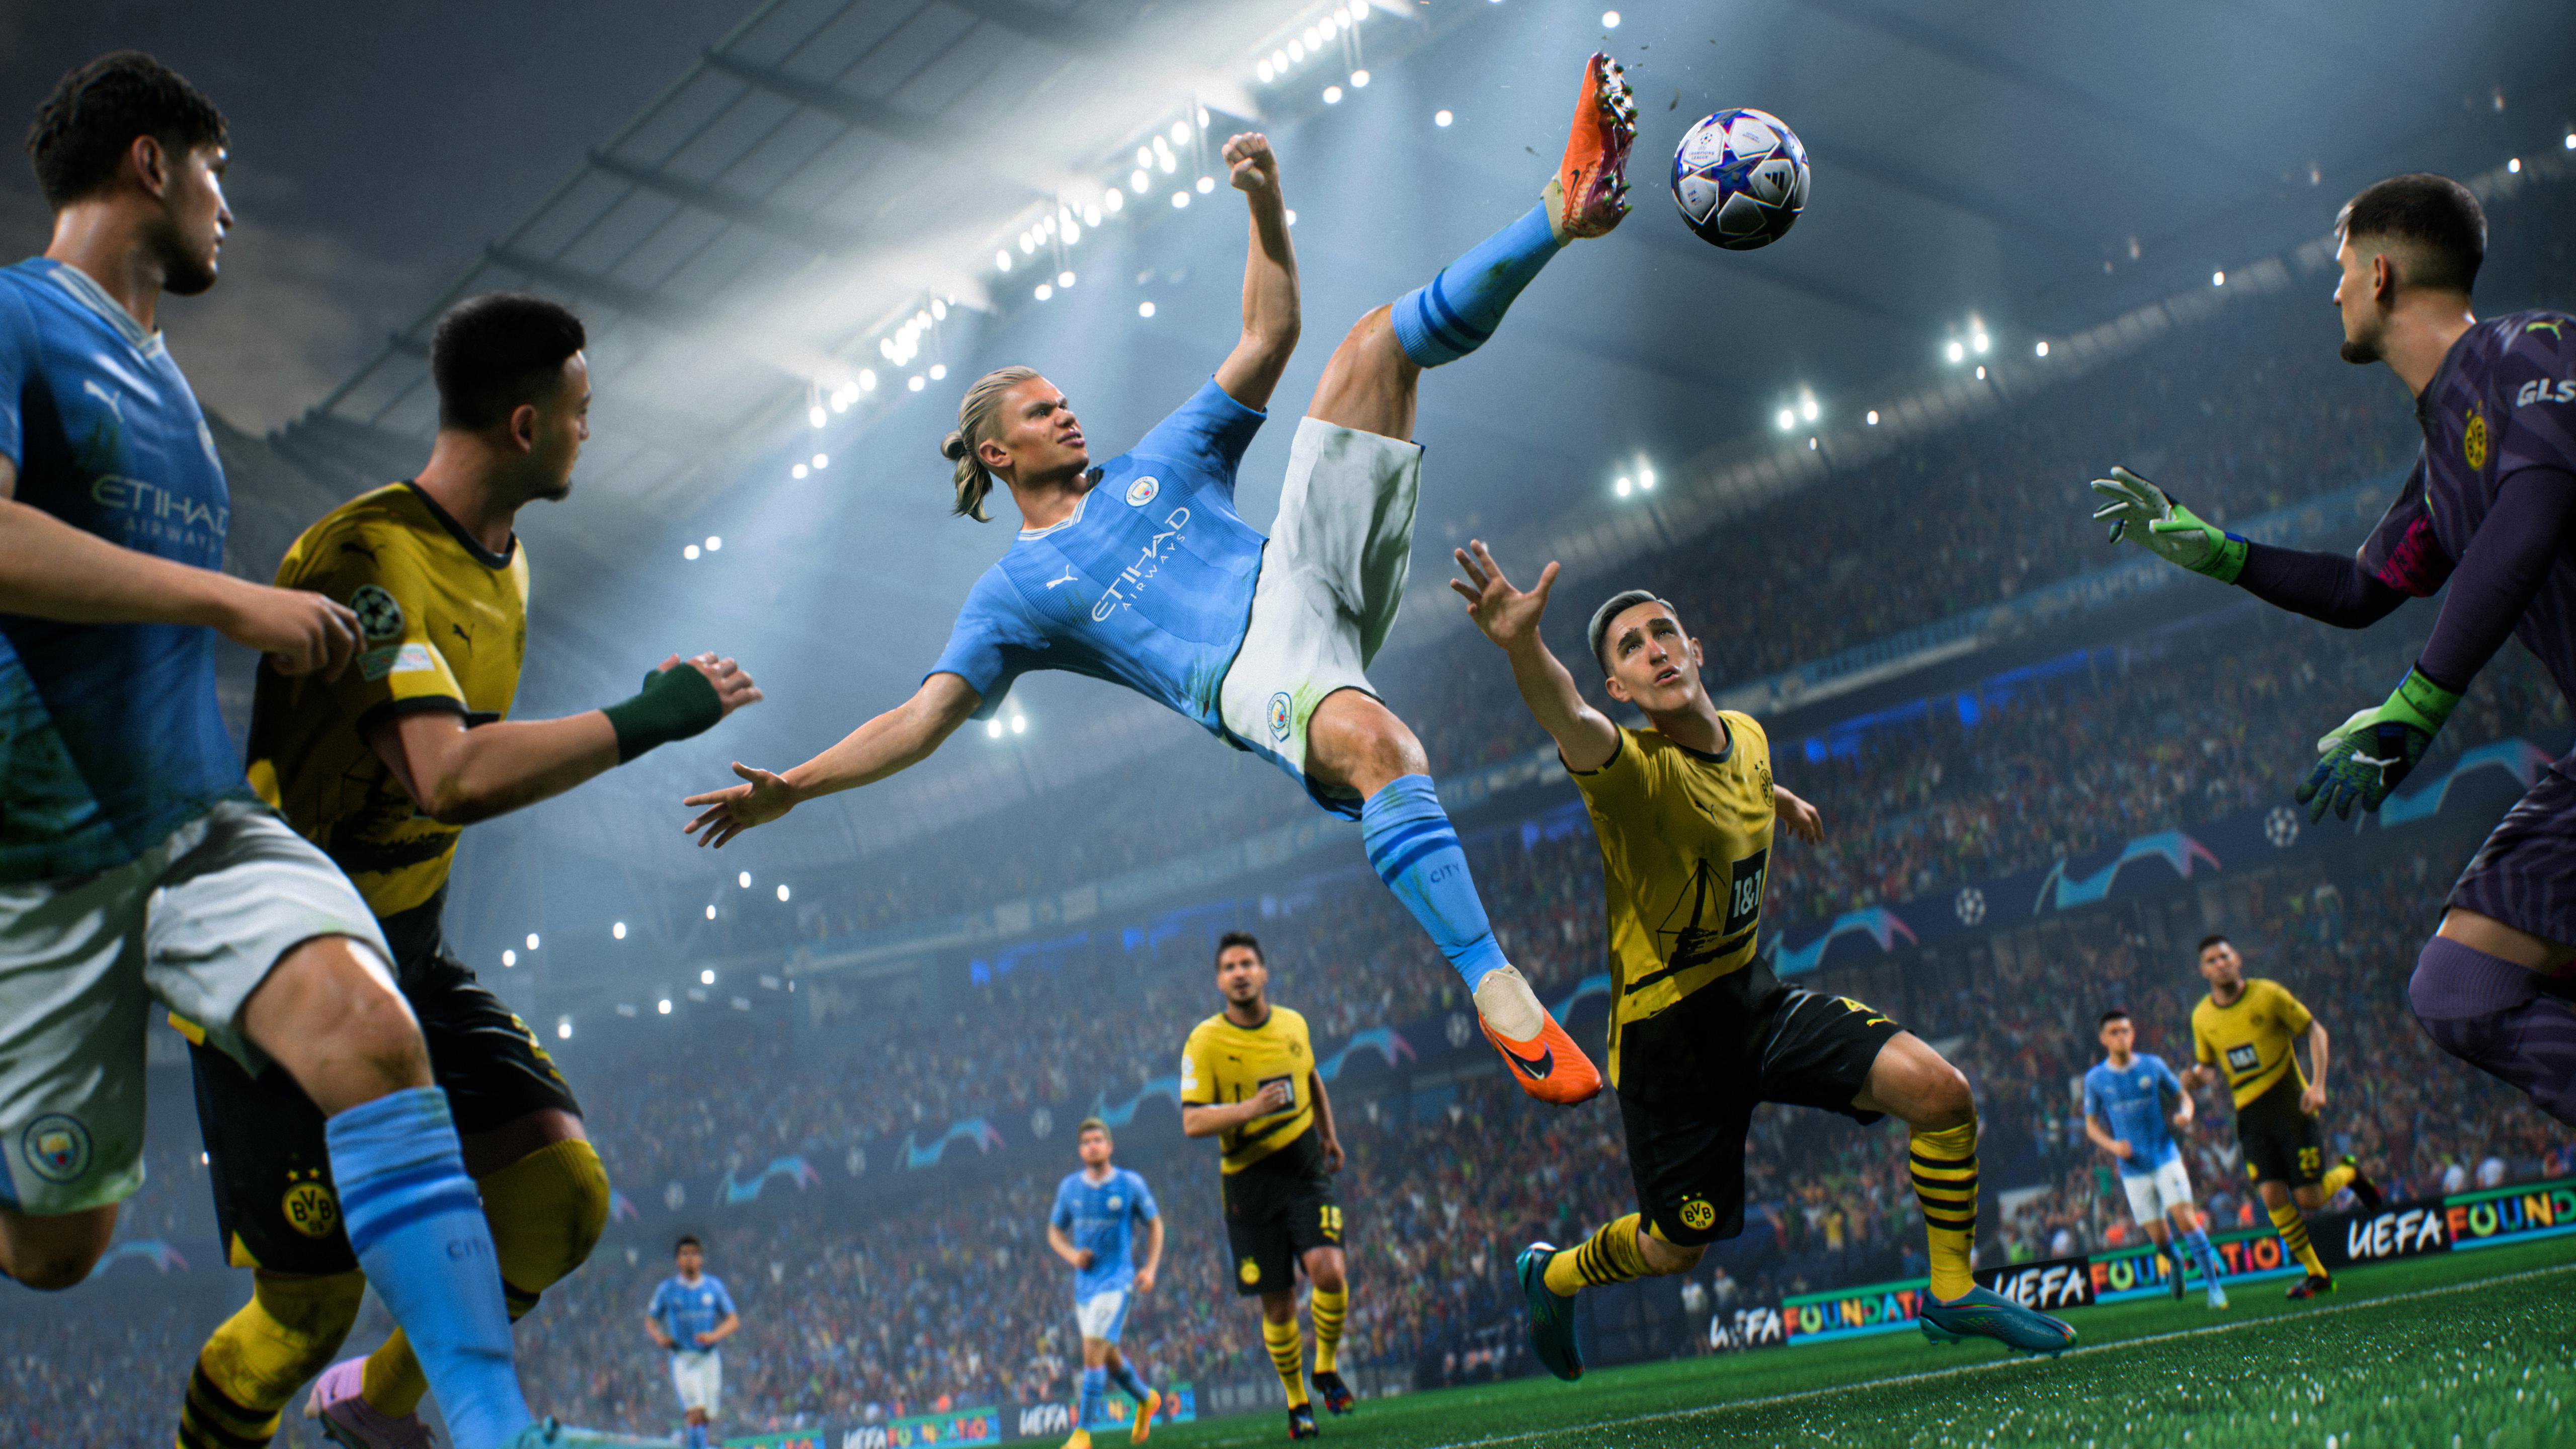 EA 24 [Xbox XBX X] FC Series Sports -